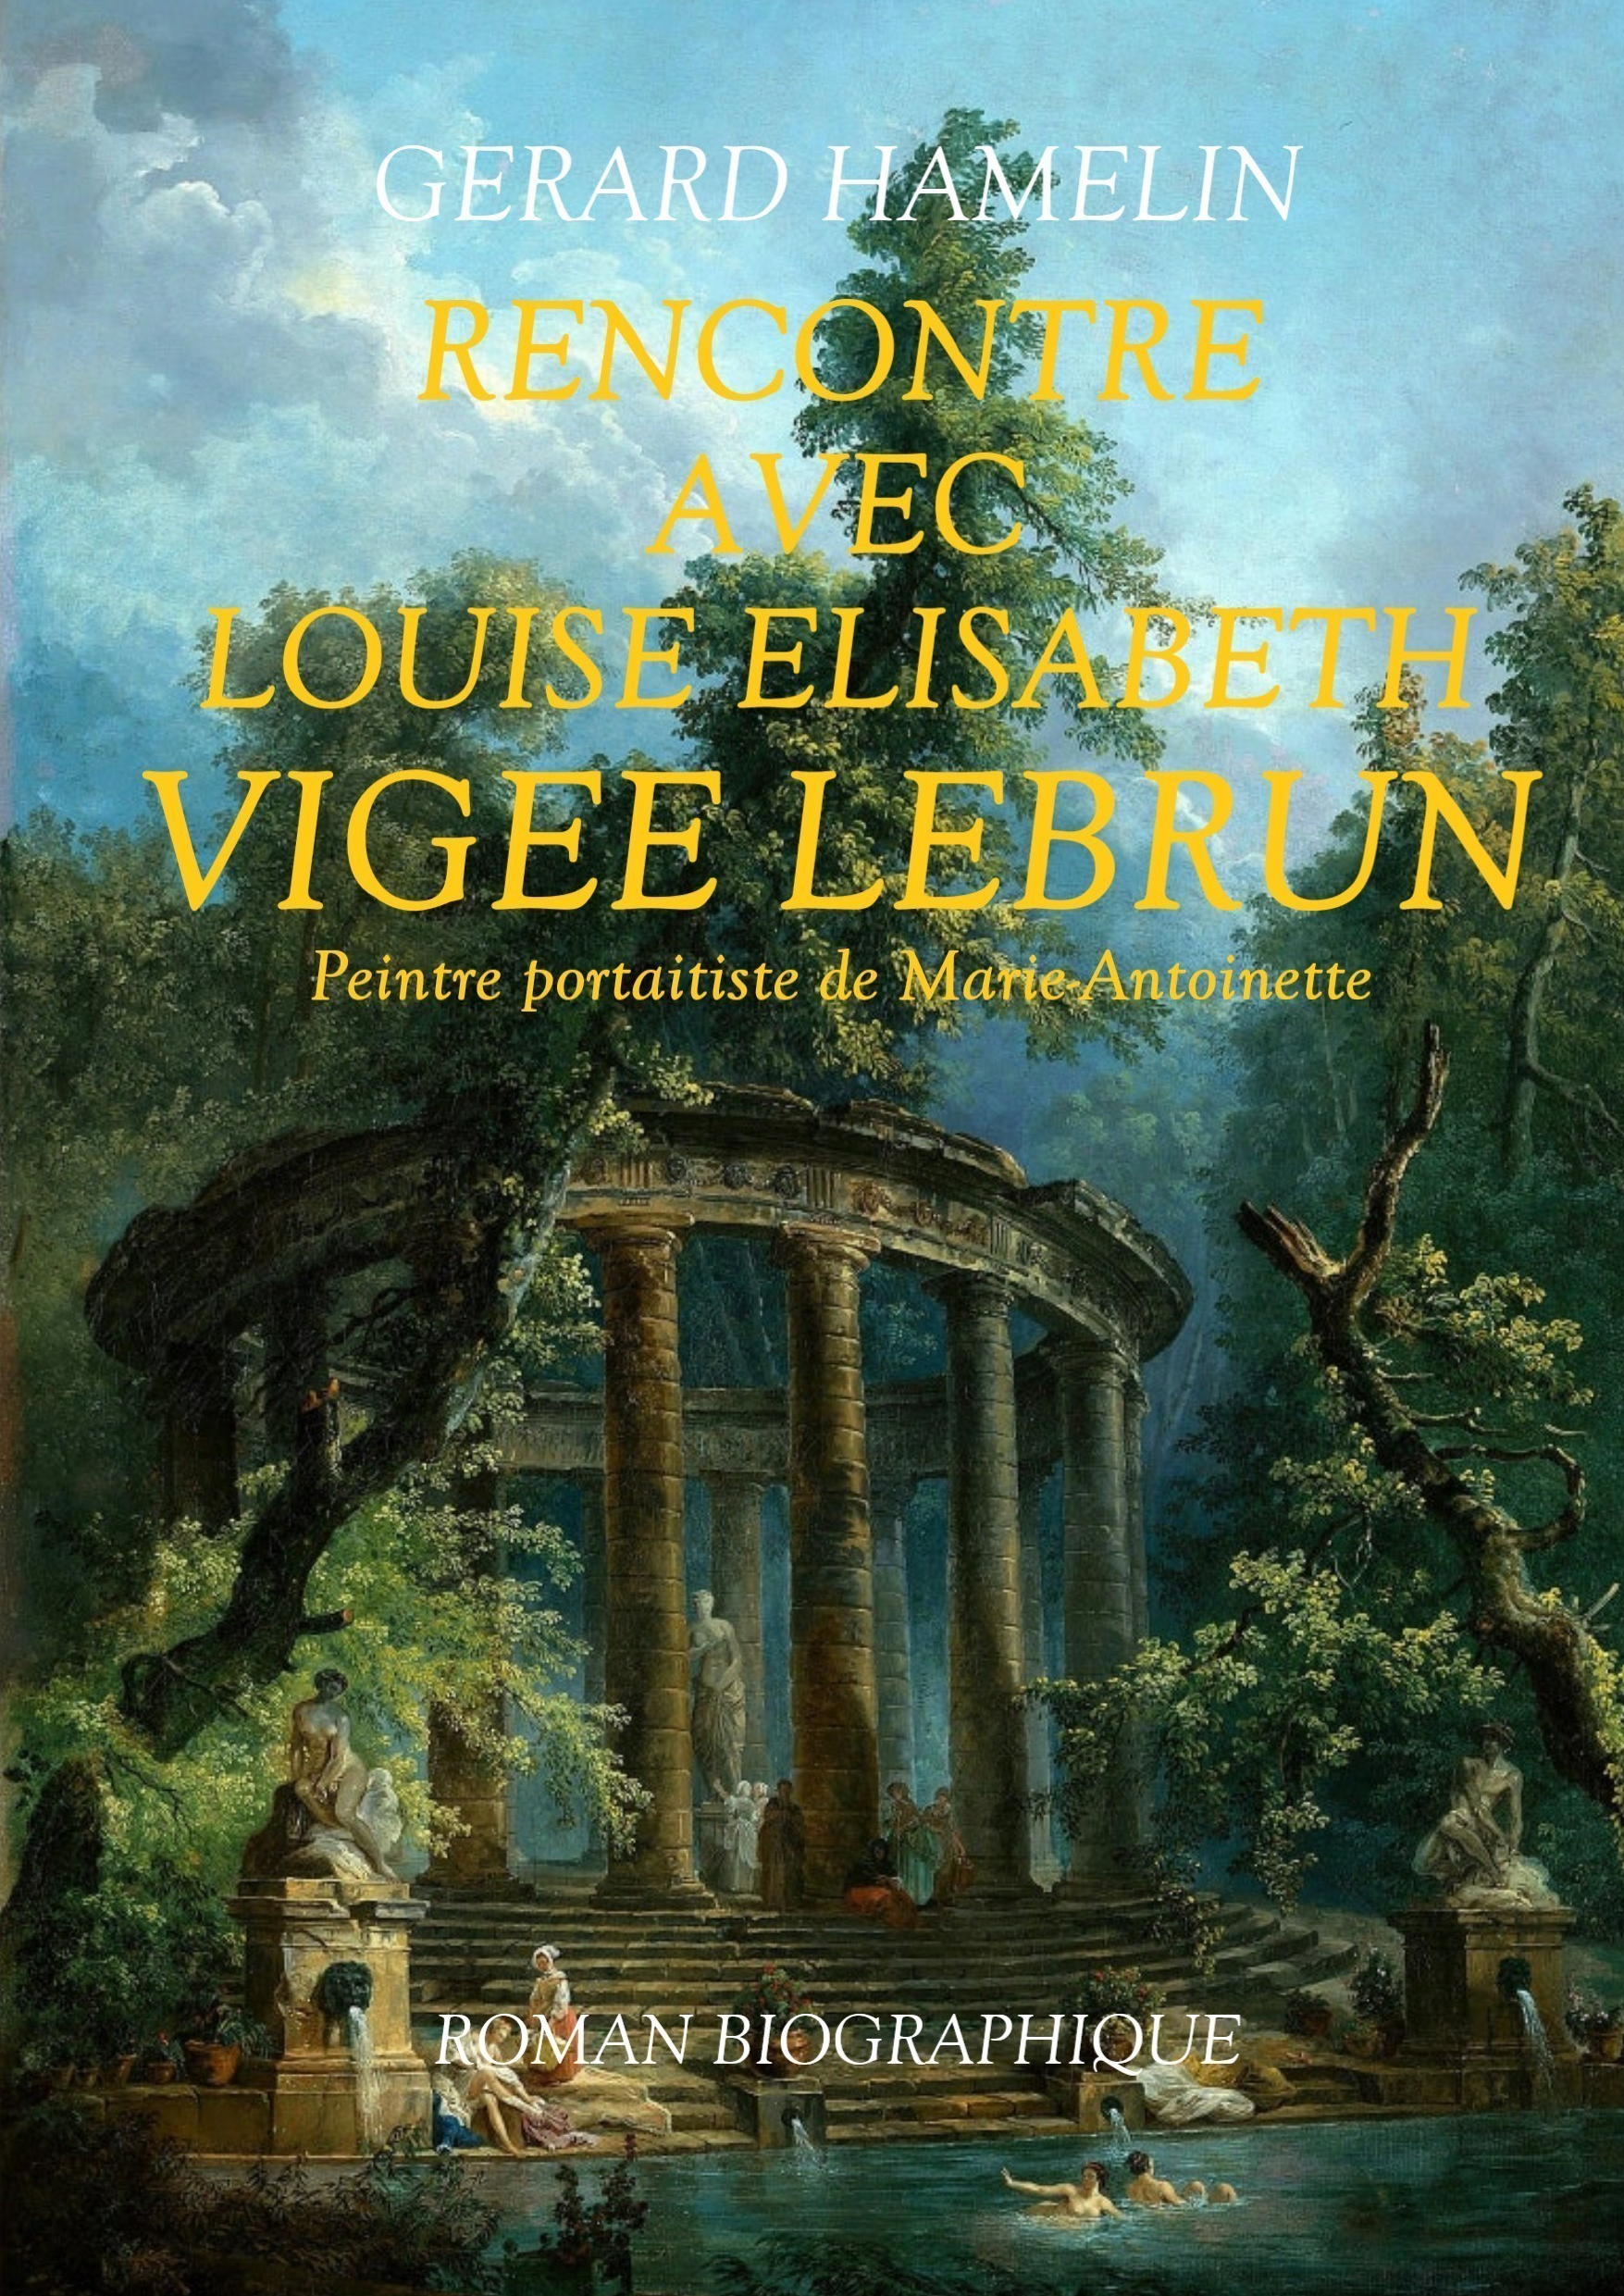 Rencontre avec Louise Elisabeth VIGEE LEBRUN